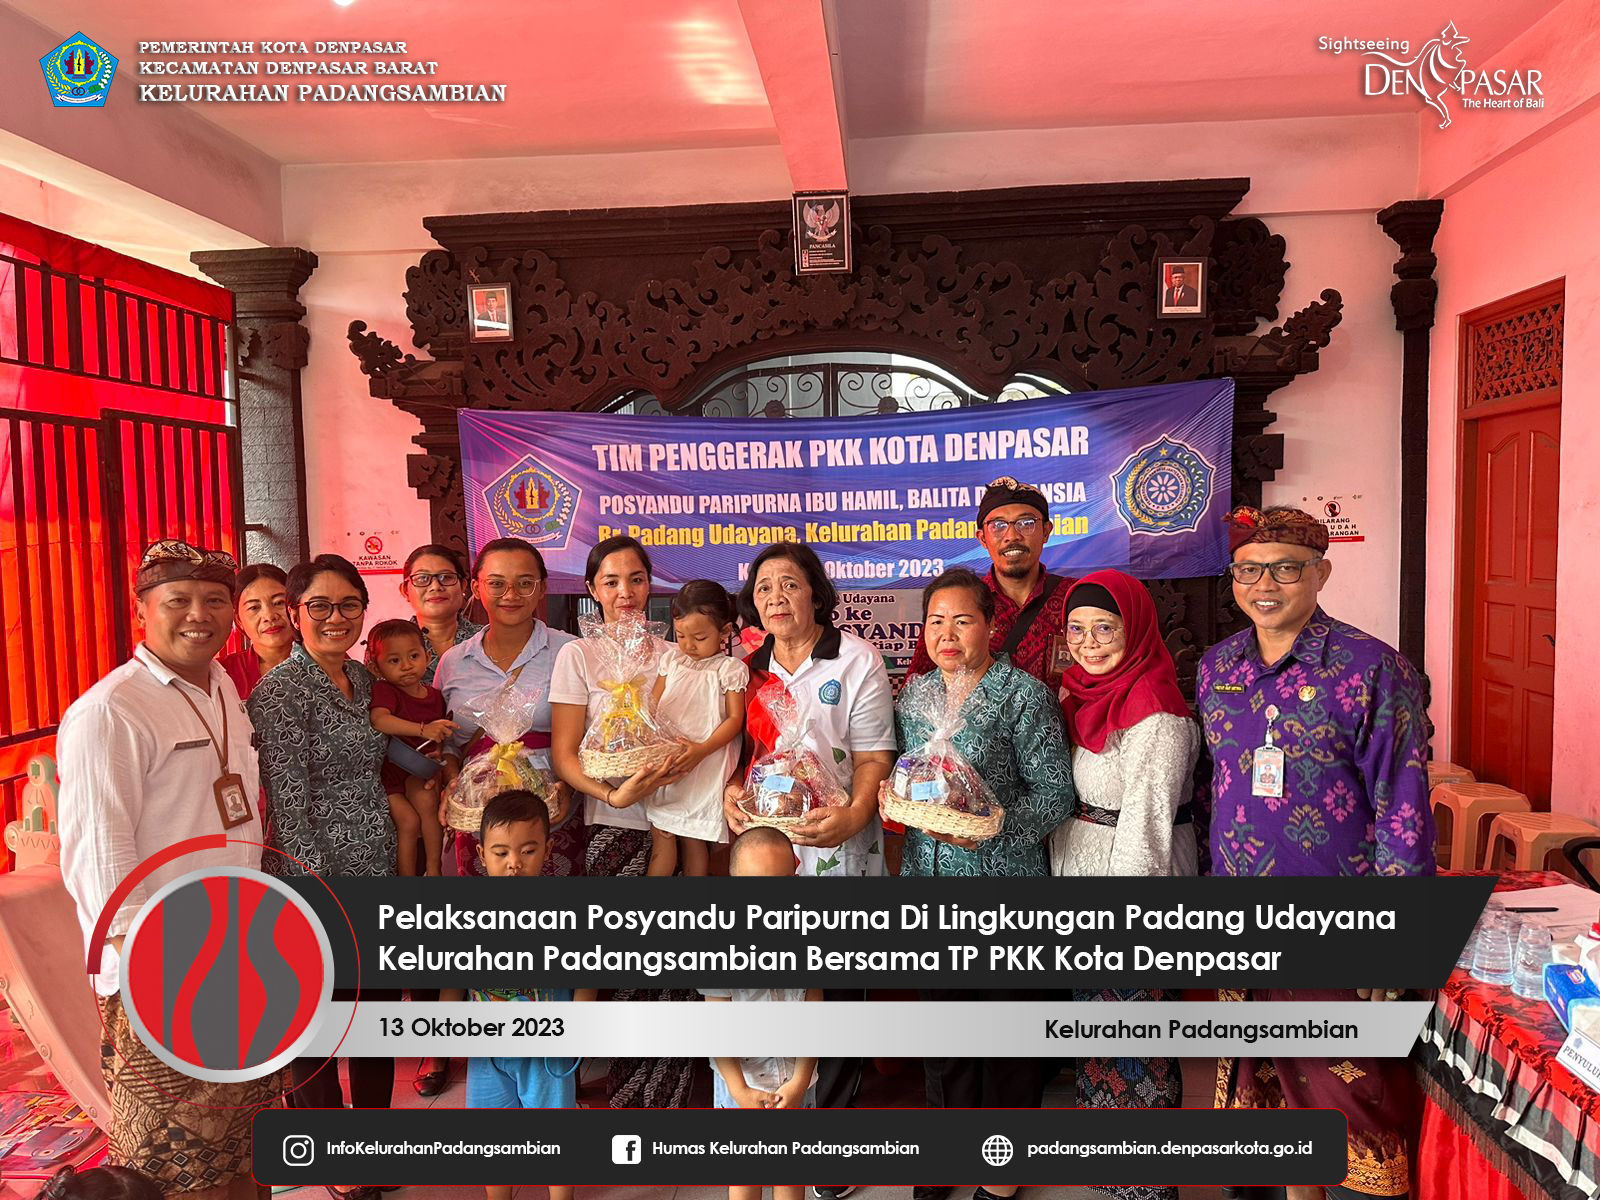 Pelaksanaan Kegiatan Posyandu Paripurna Di Lingkungan Padang Udayana Kelurahan Padangsambian Bersama TP PKK Denpasar